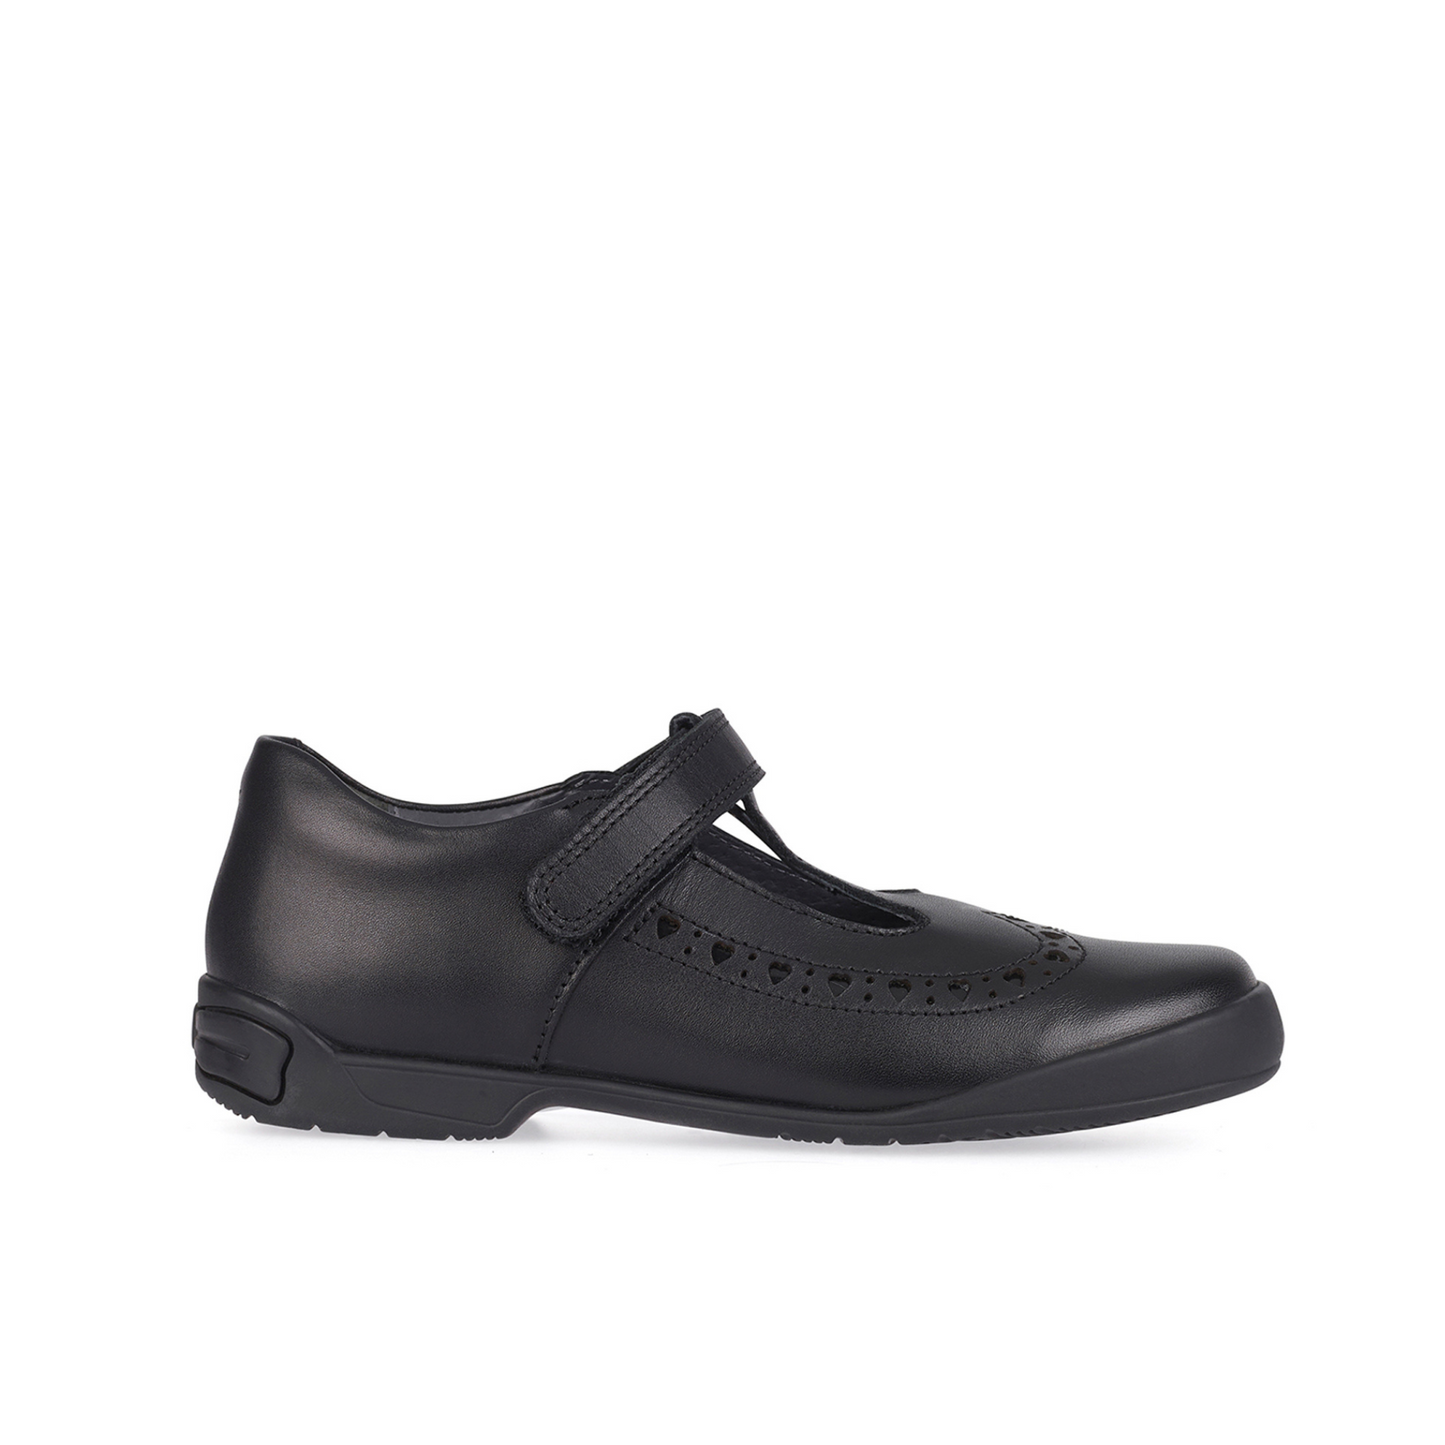 Leapfrog Black Leather T-Bar Girls School Shoe